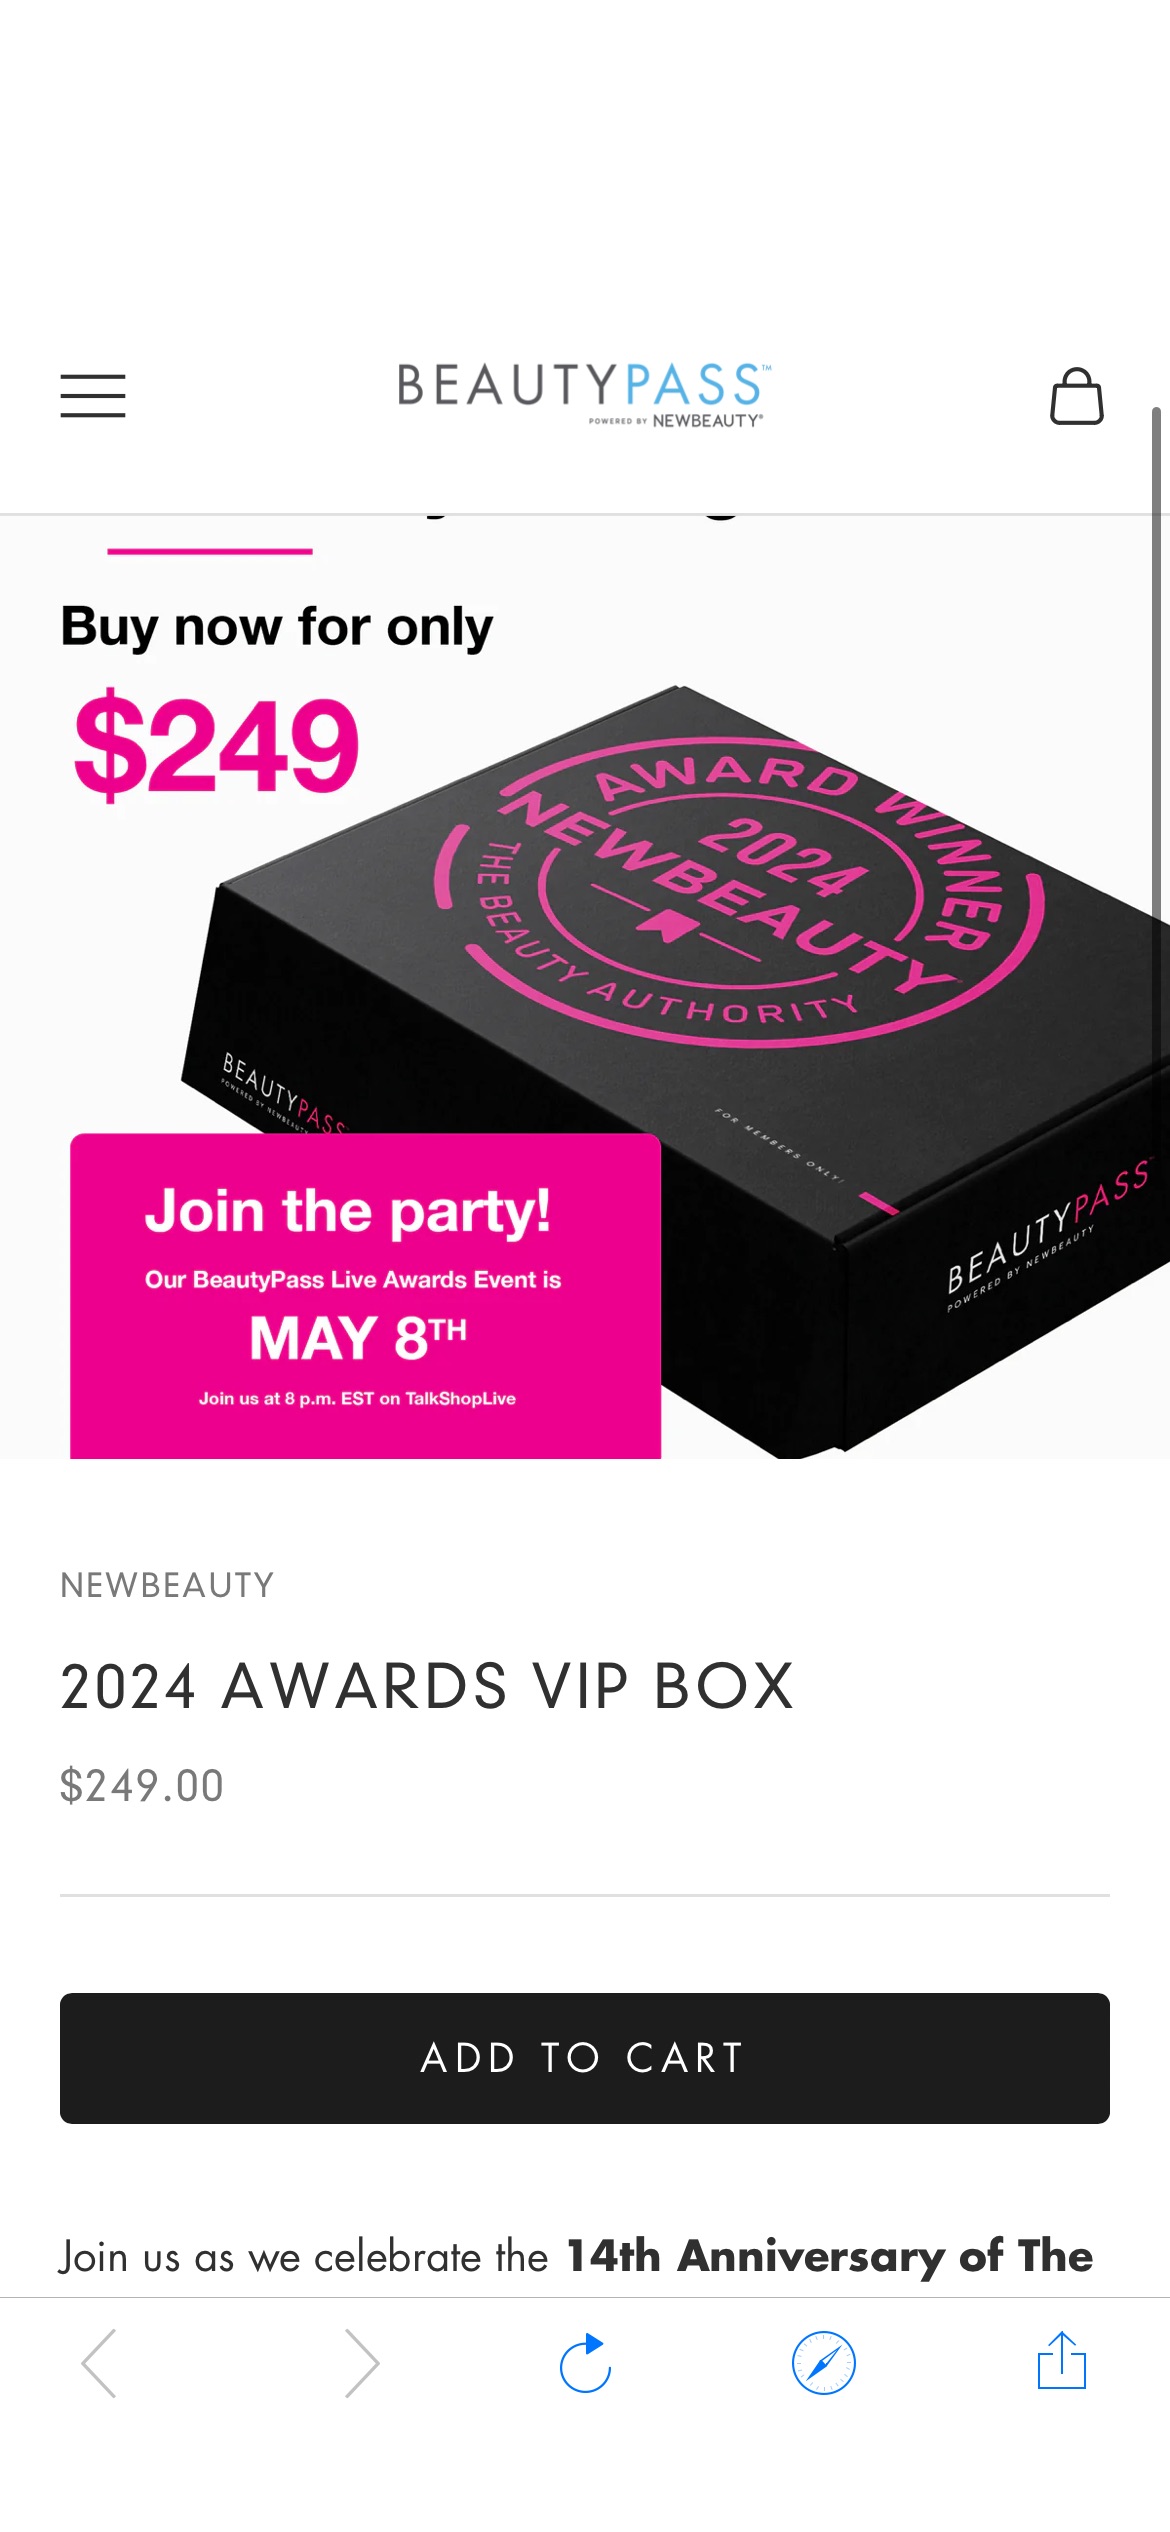 2024 Awards VIP Box BeautyPass：最后一次机会...只剩下两个小时可以以199美元的特价获得您的2024年VIP奖励盒，然后它在美国东部时间今晚10点跃升至249美元！！！

数量有限，而供应有限。